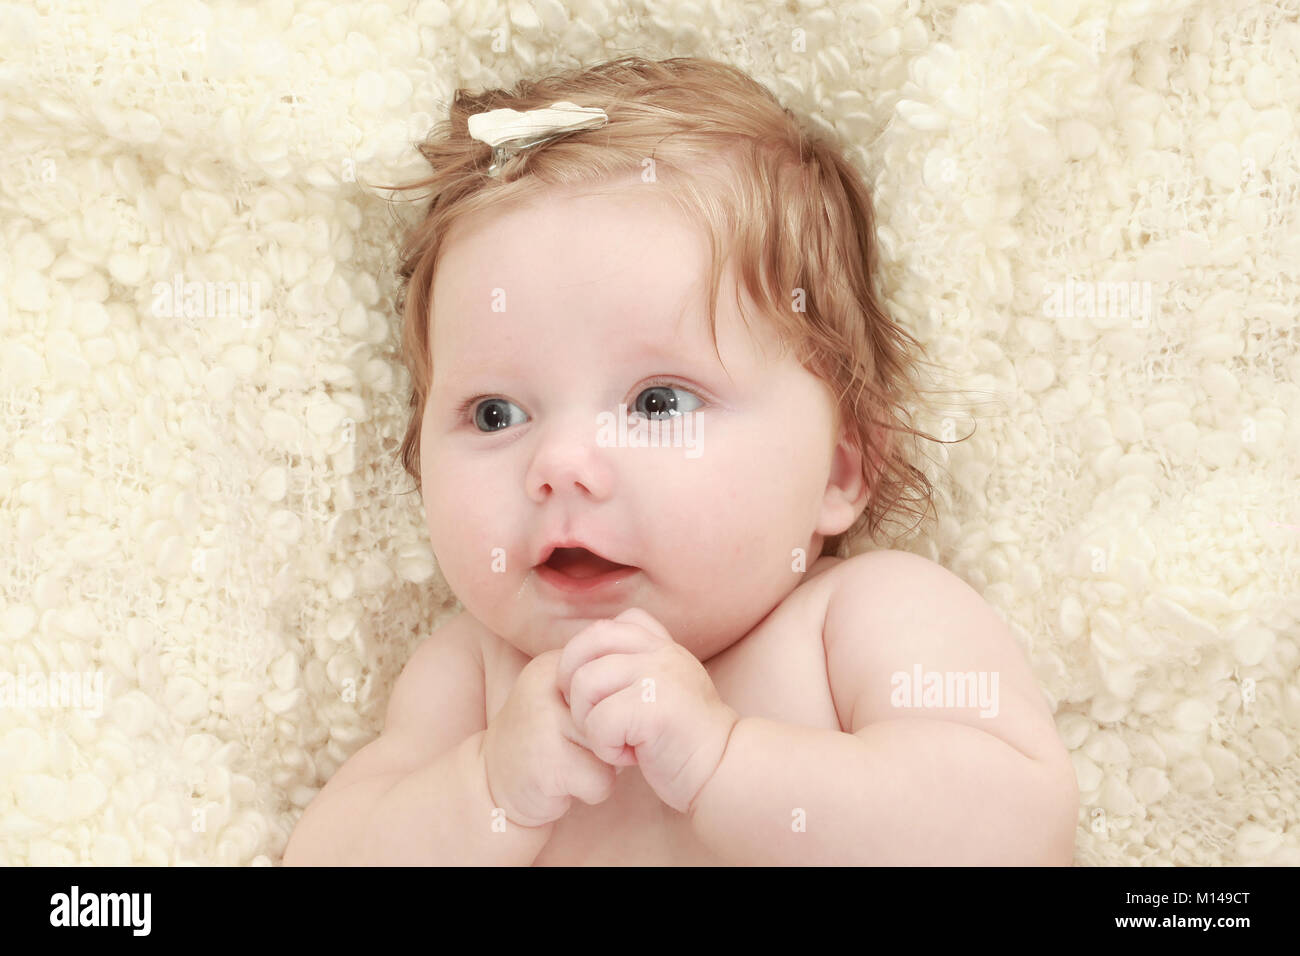 3 mese fa Baby girl su una coperta Foto Stock